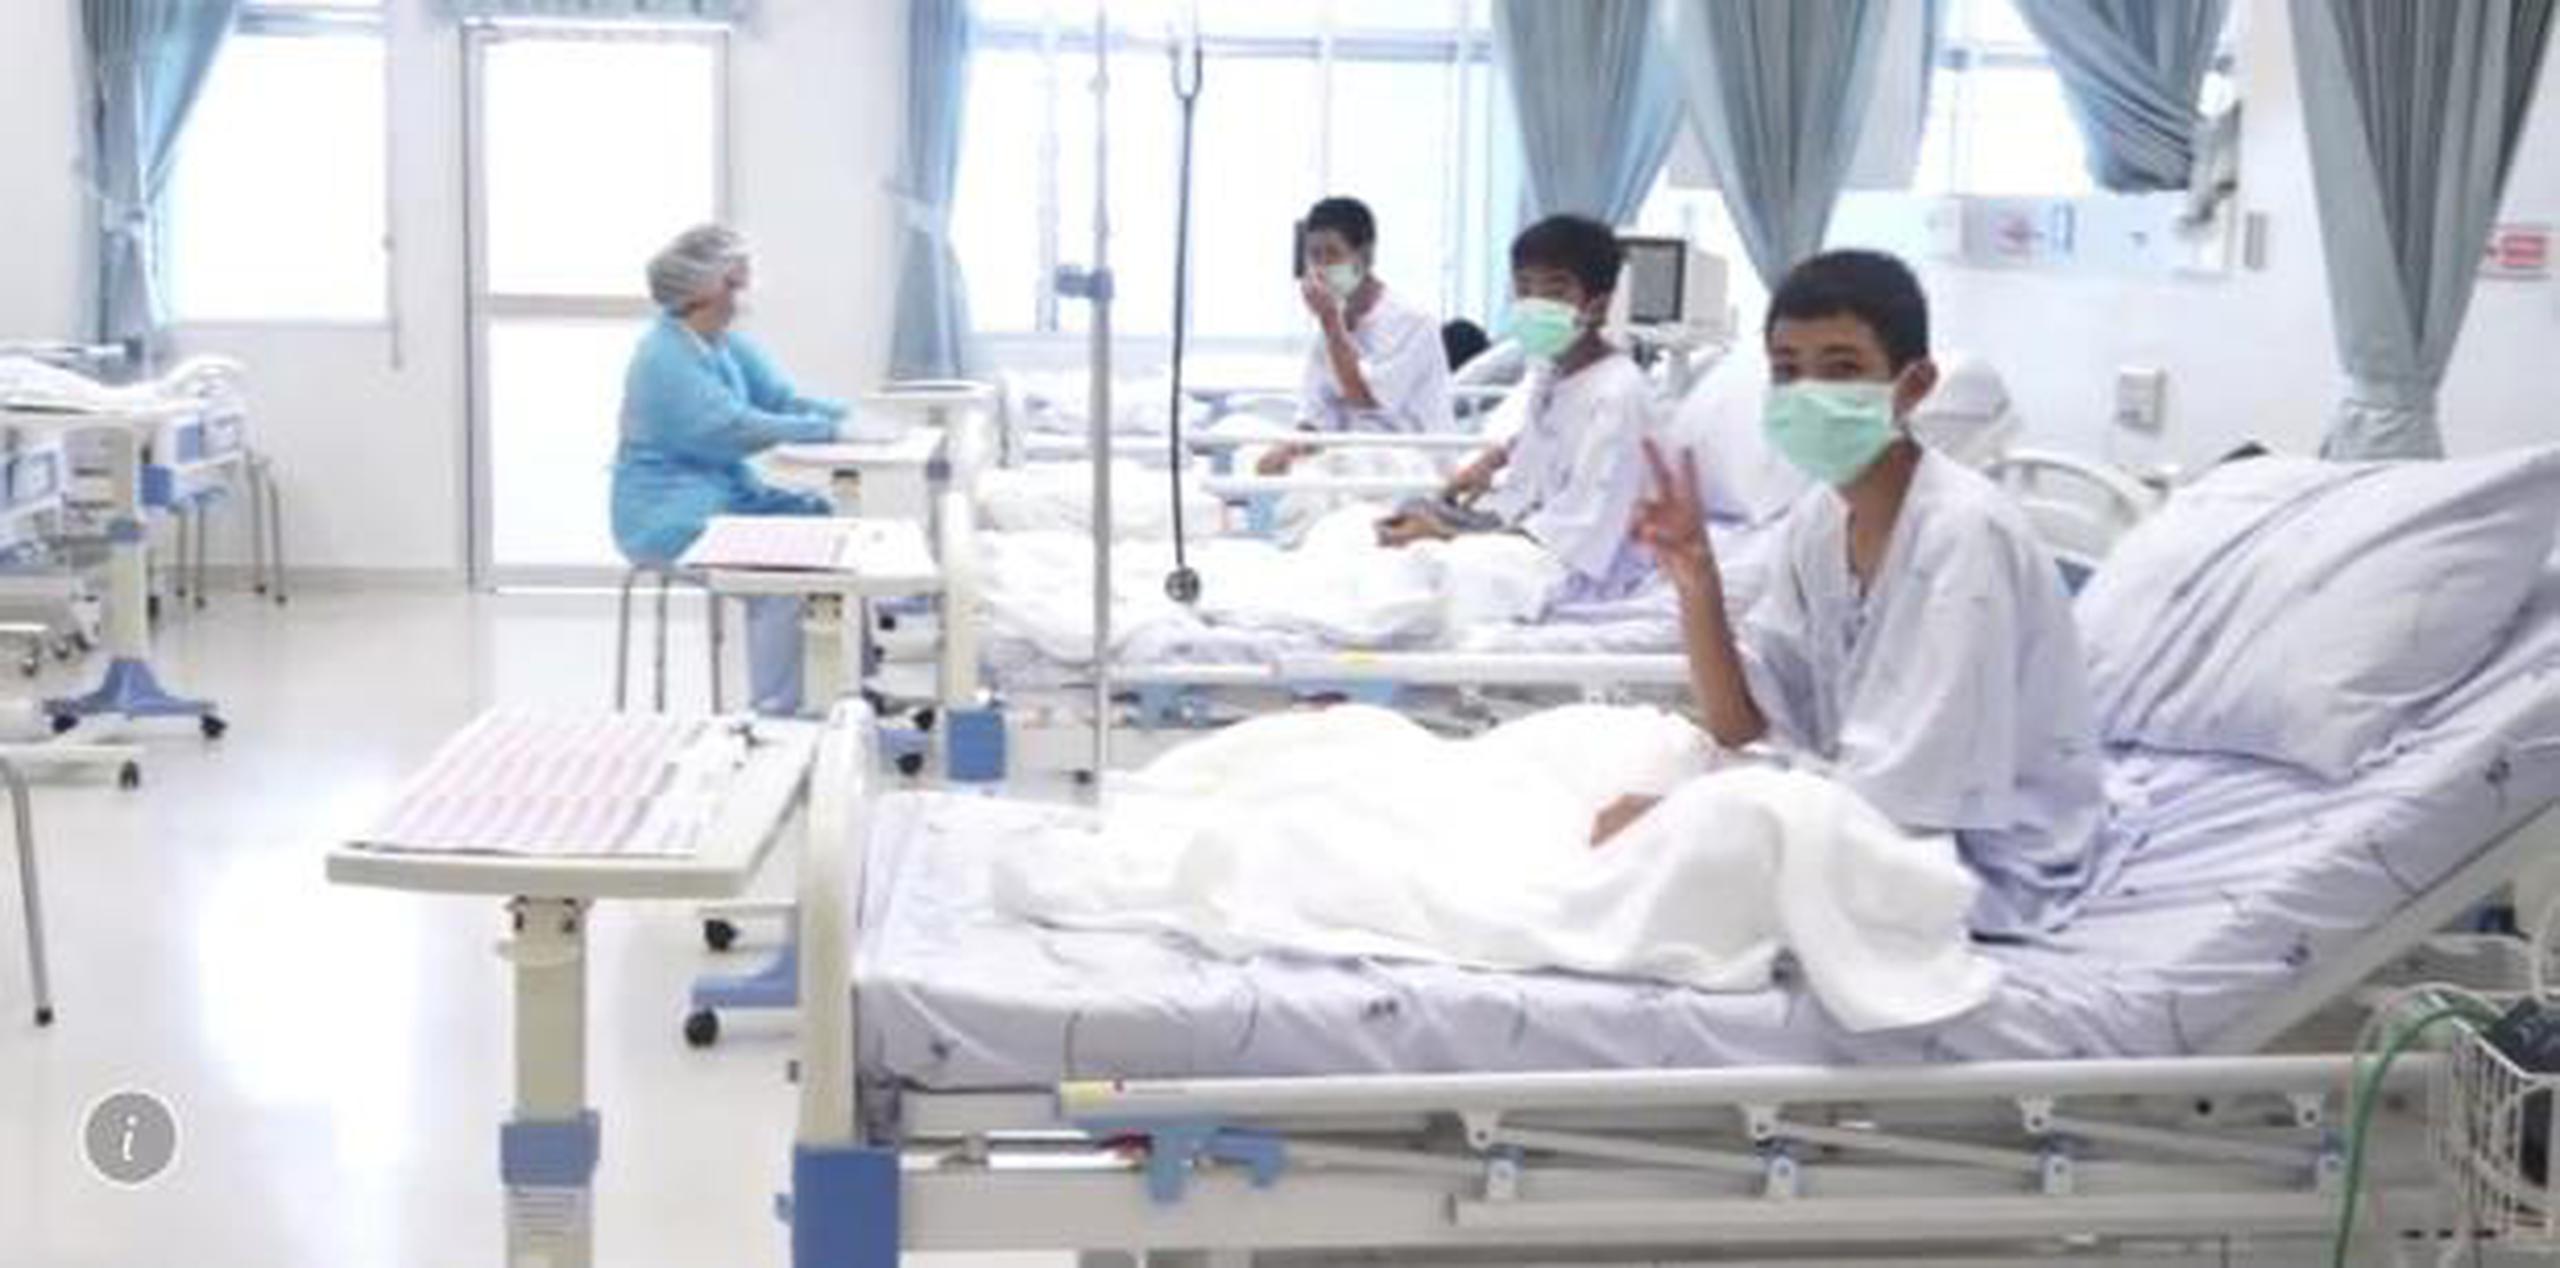 El grupo se recuperan con normalidad y su vida no corre peligro. (Thailand Government Spokesman Bureau vía AP)